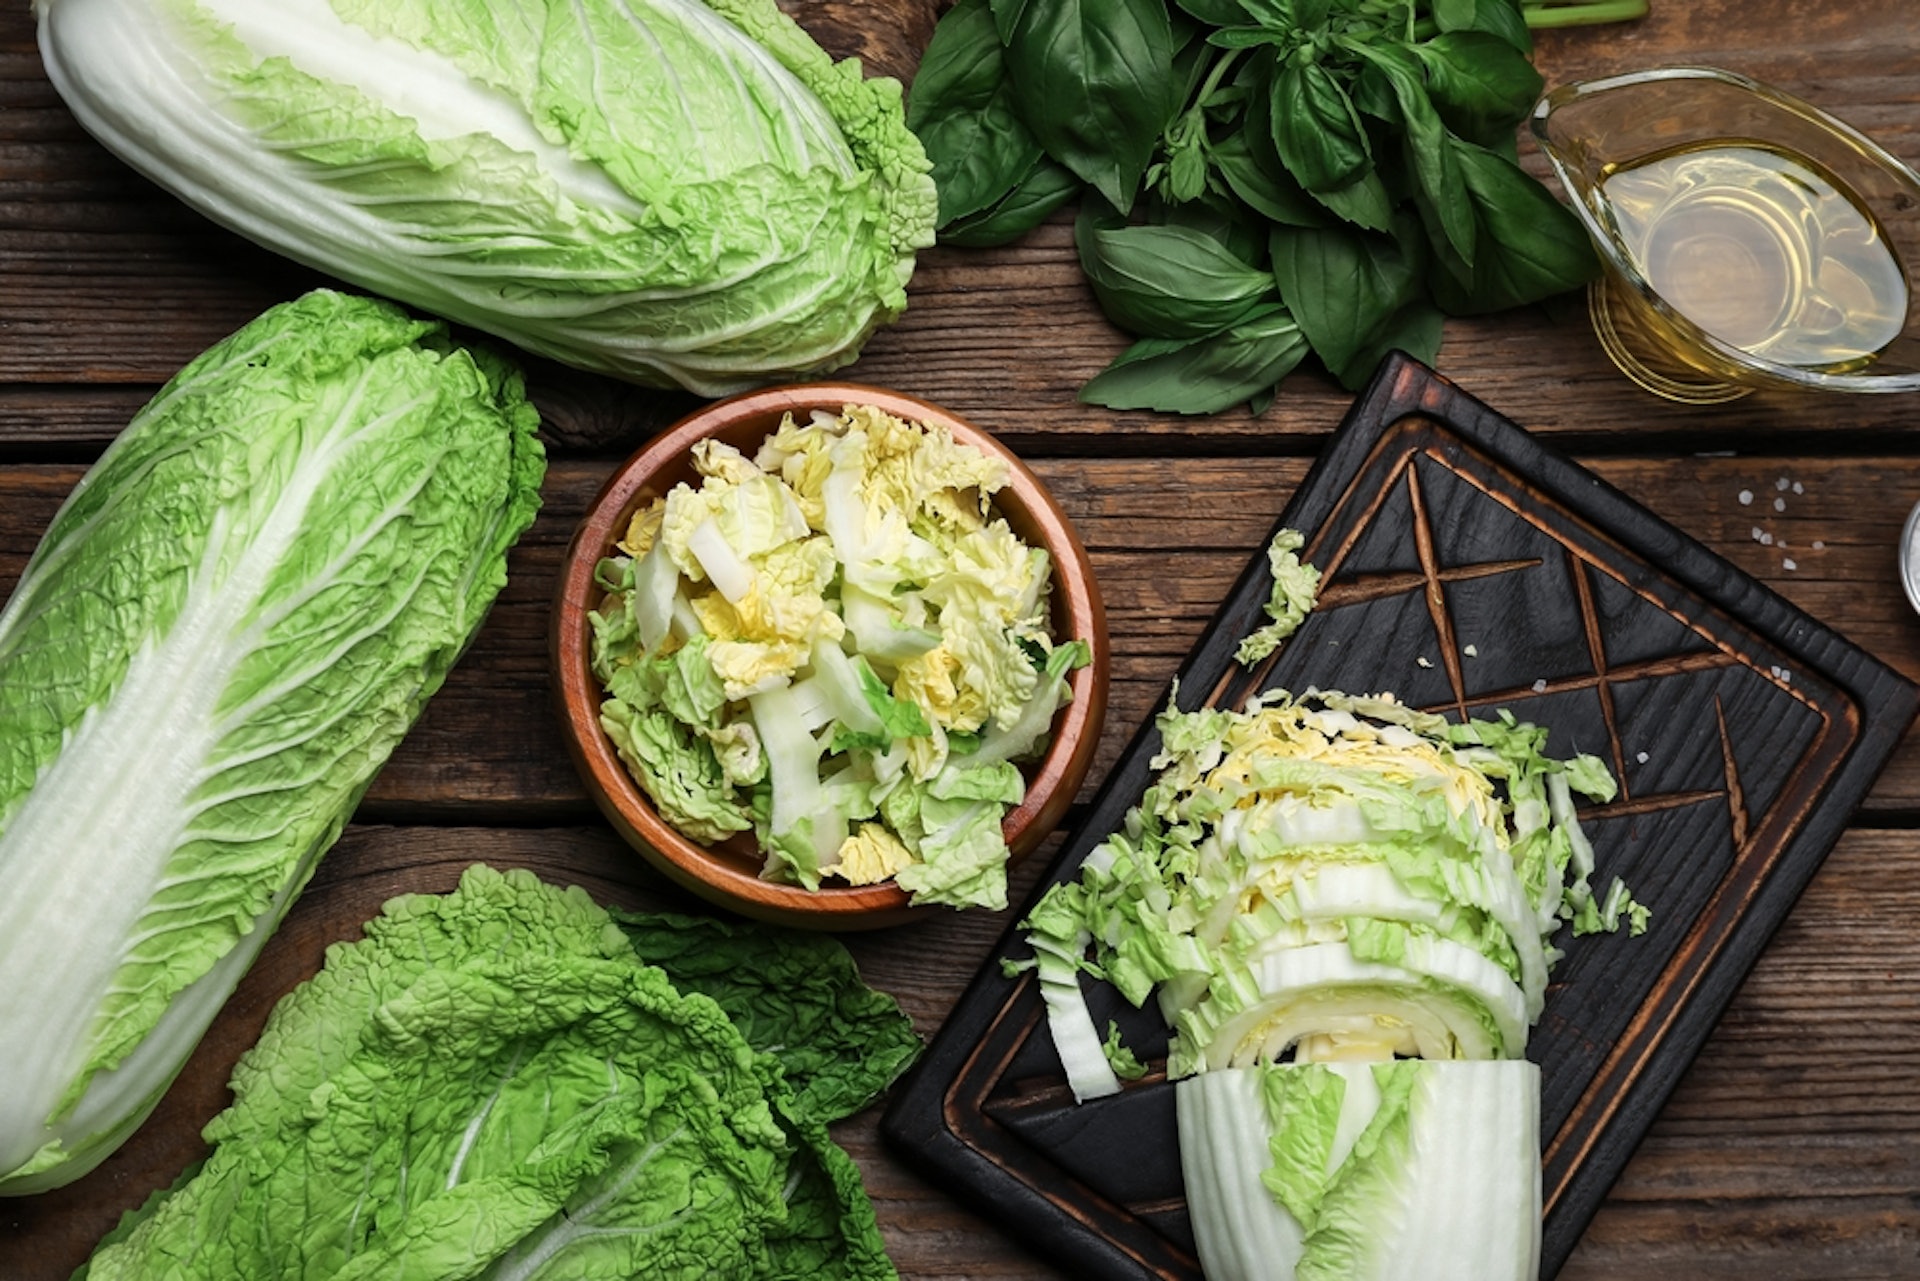 大白菜是美國癌症醫學會所推薦有助抗癌的其中一種蔬果